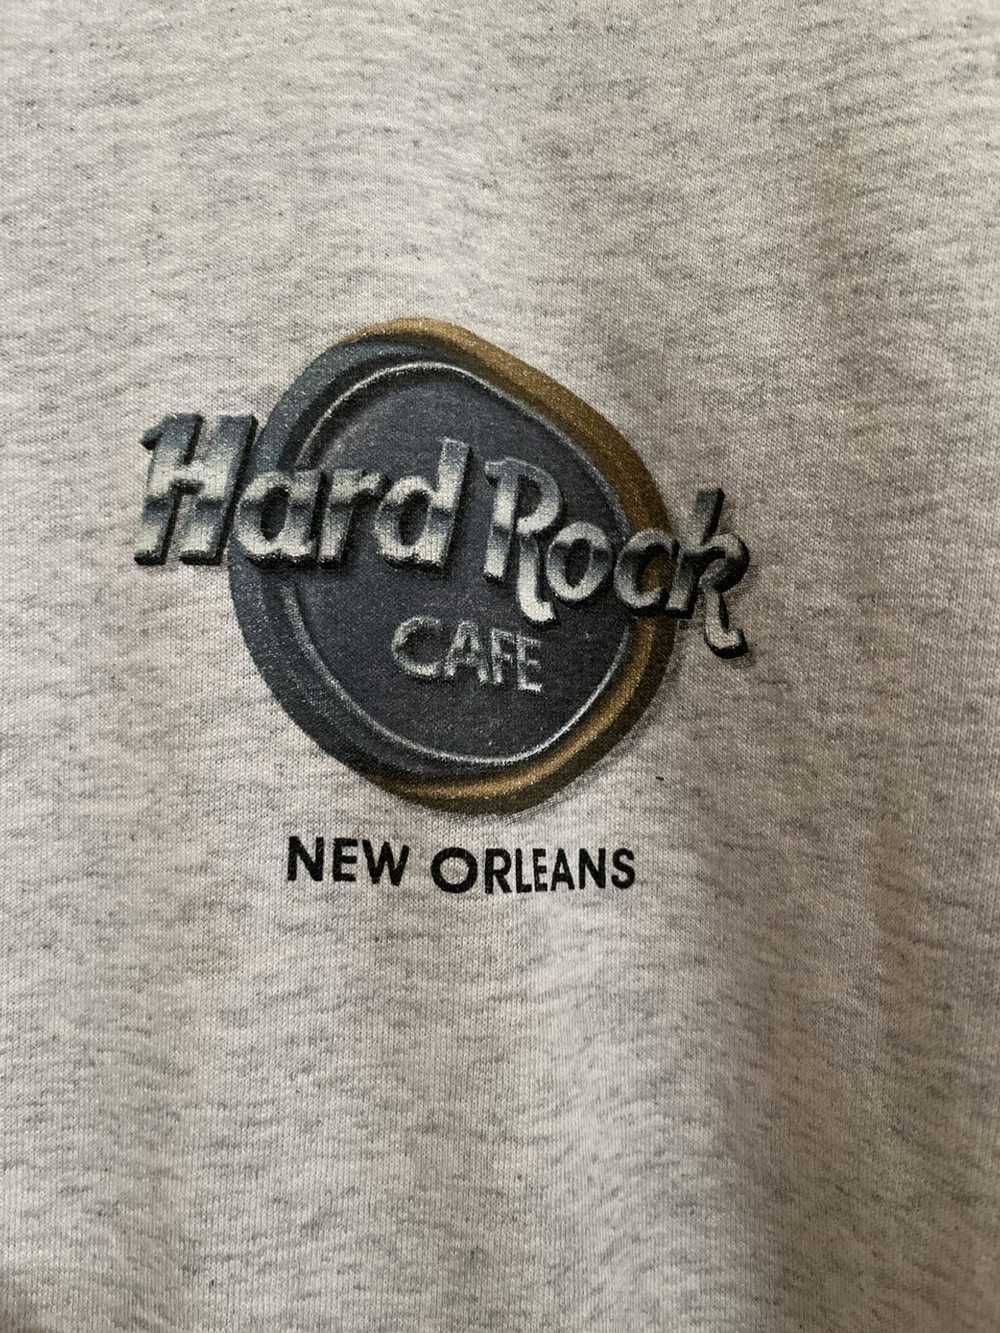 Hard Rock Cafe Hard Rock Cafe New Orleans - image 3